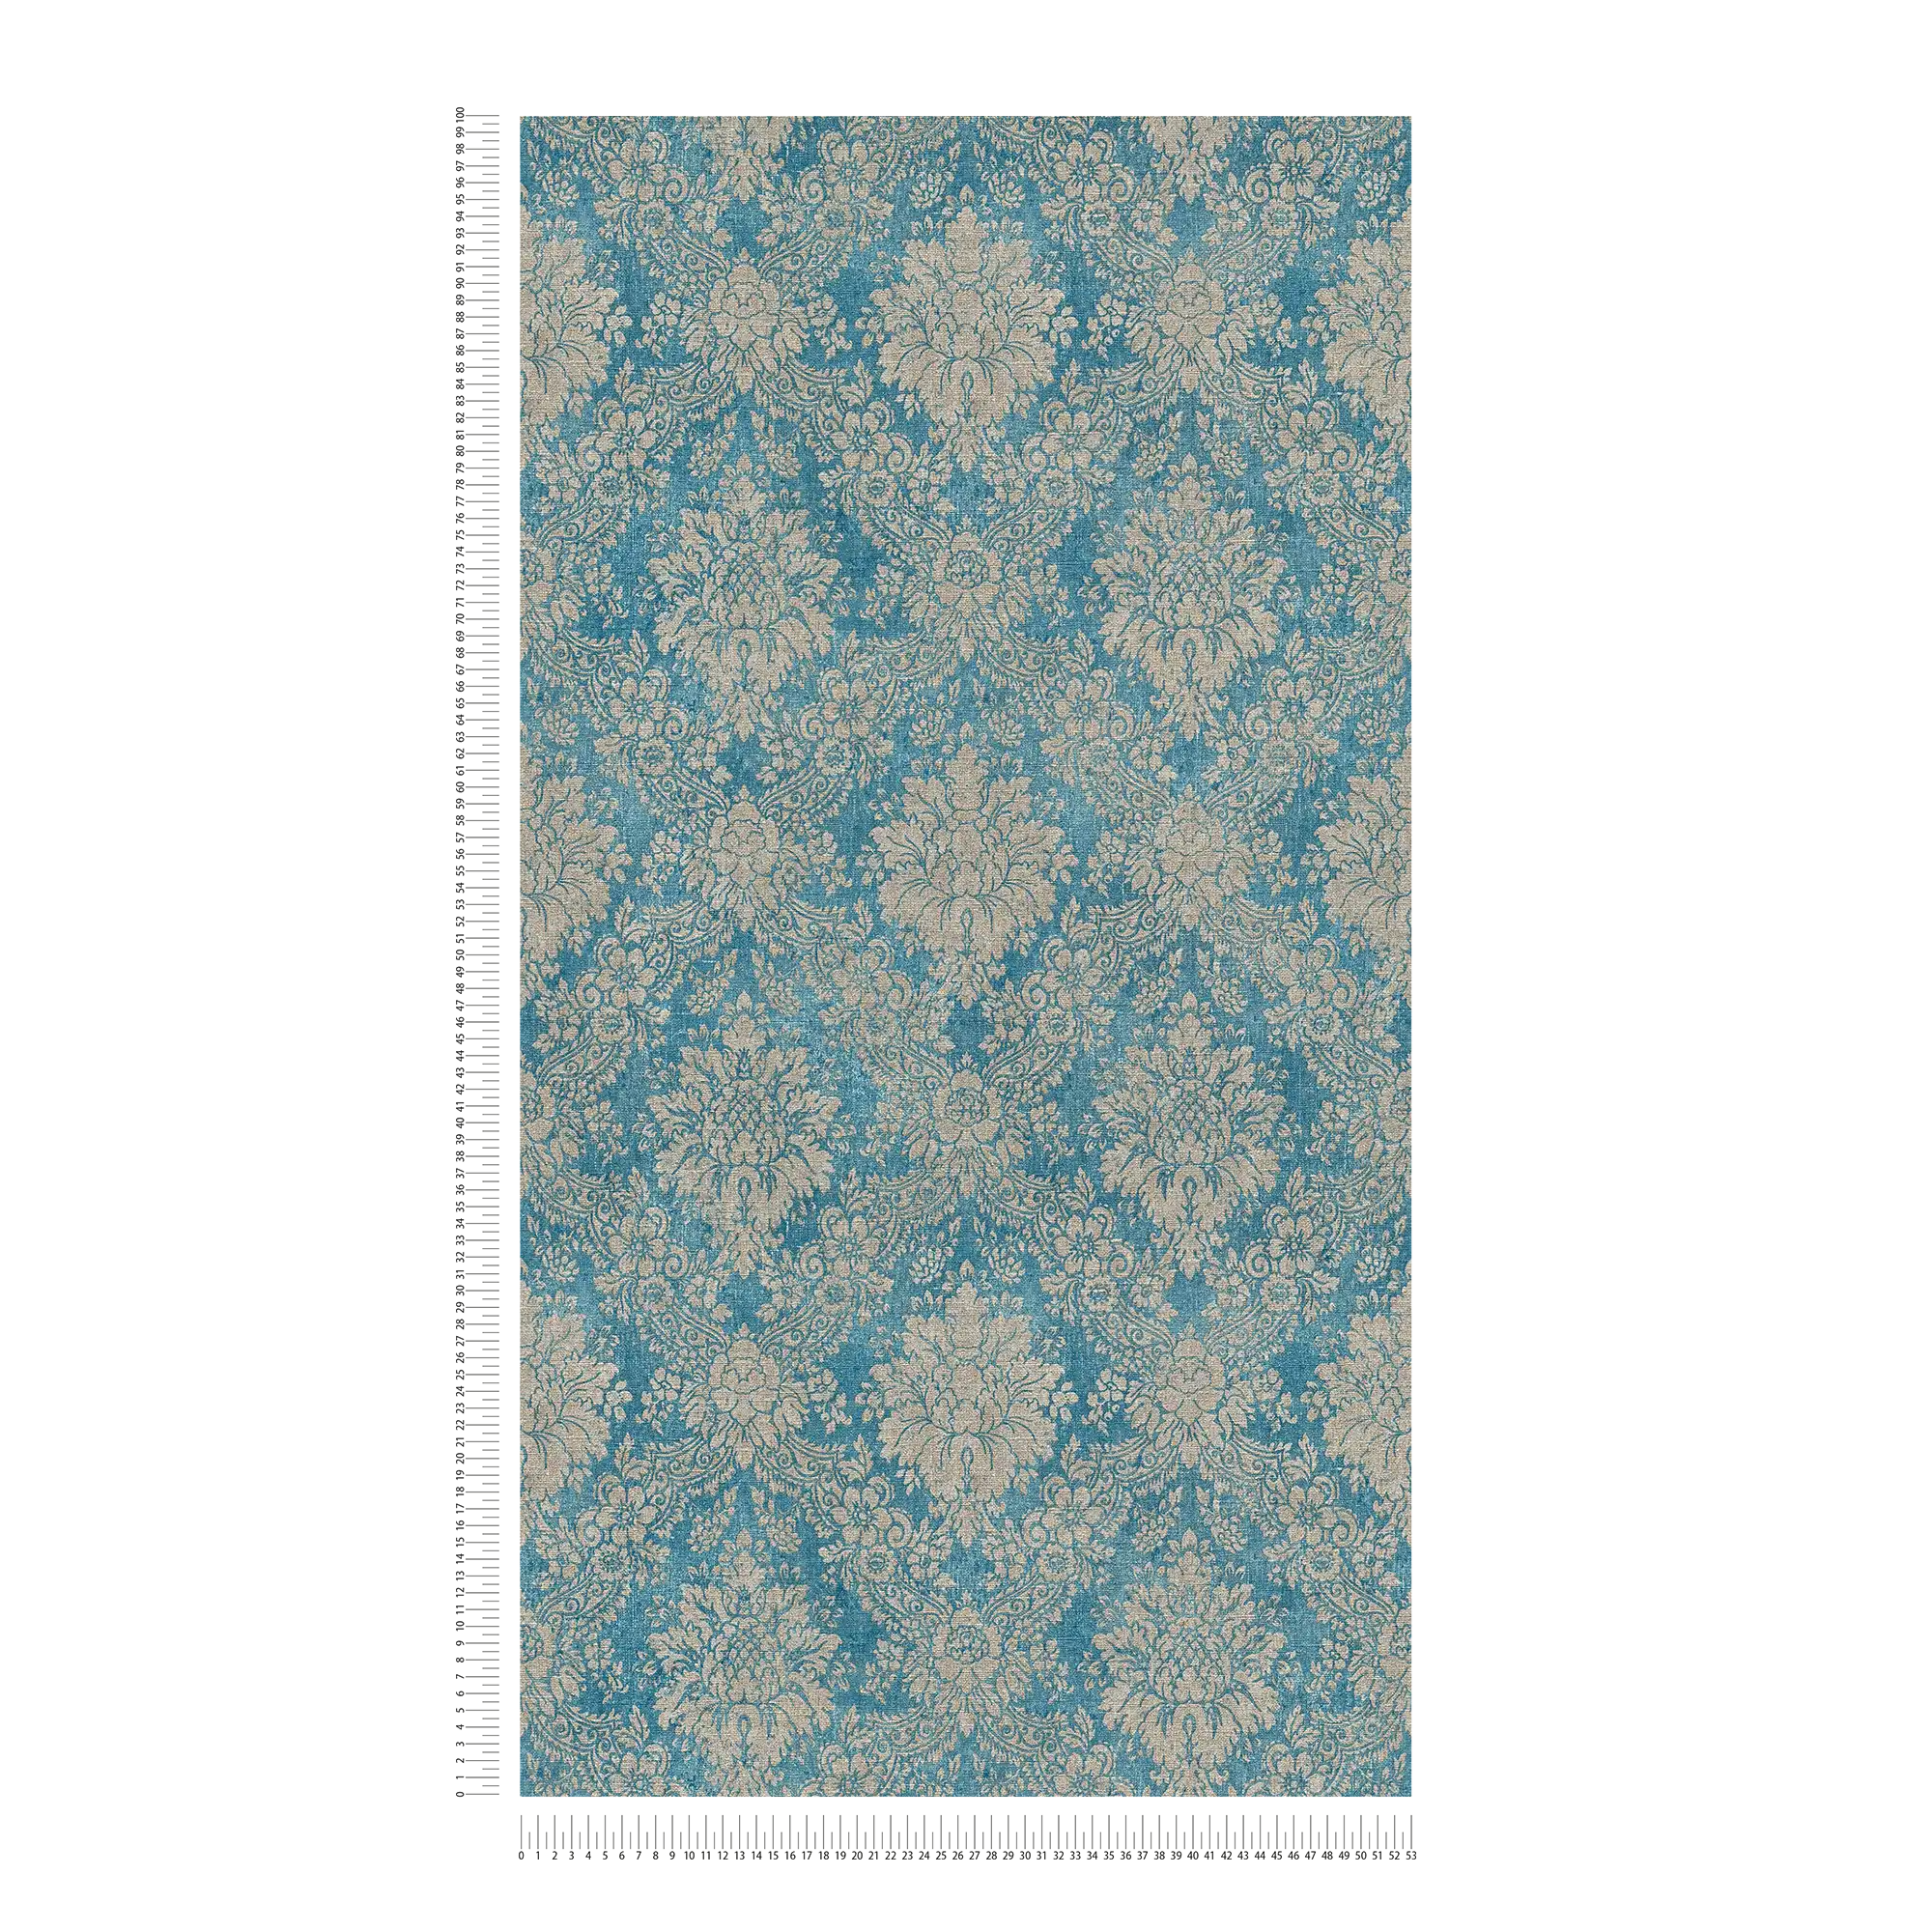             Bloemenornament behang met metallic effect & used look - blauw, bruin, metallic
        